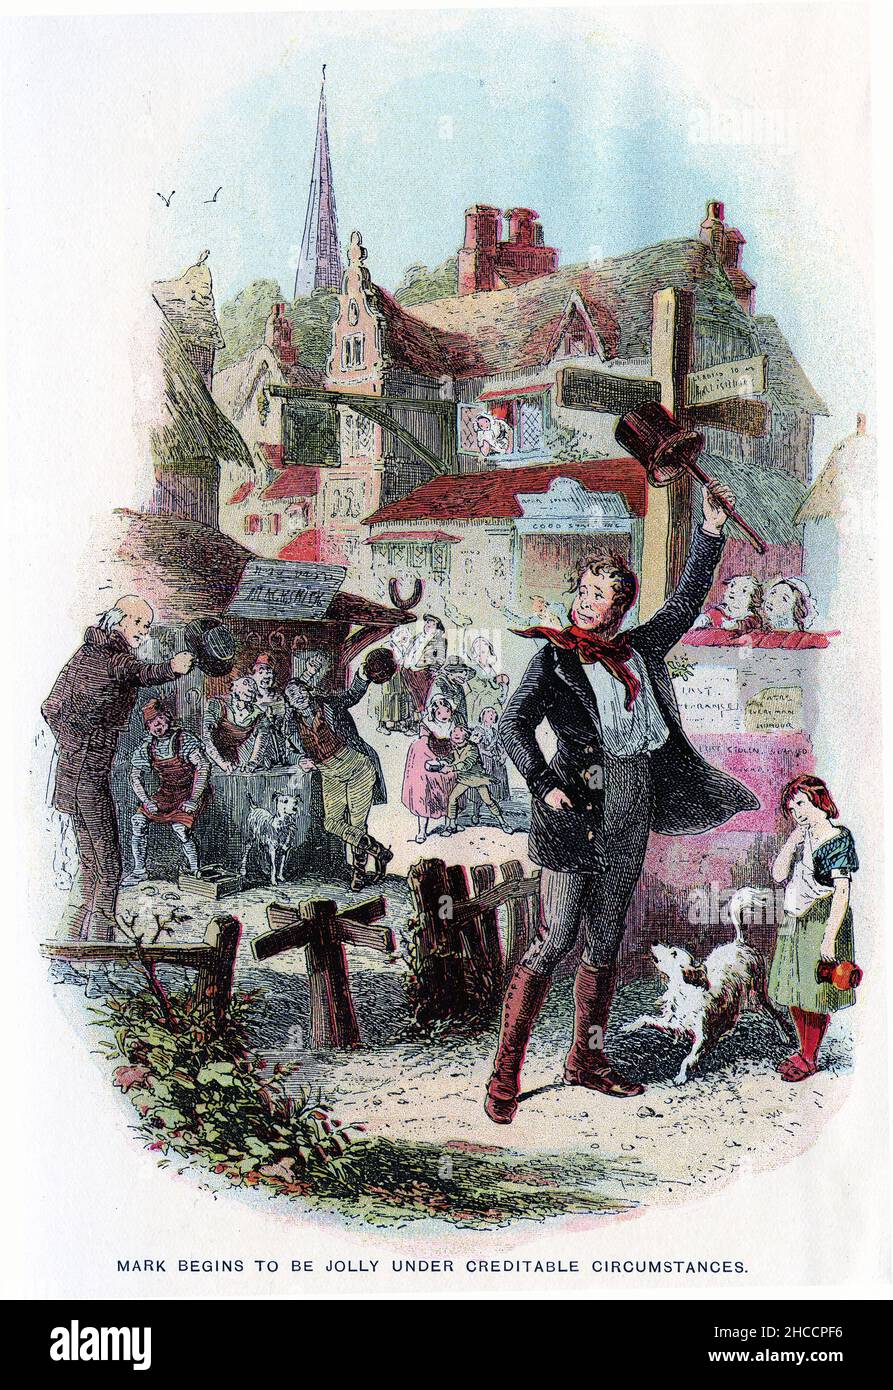 Stich von Mark, der unter anerkennbaren Umständen jollyn wird, eine Szene aus einem viktorianischen Buch von Charles Dickens, veröffentlicht um 1908 Stockfoto